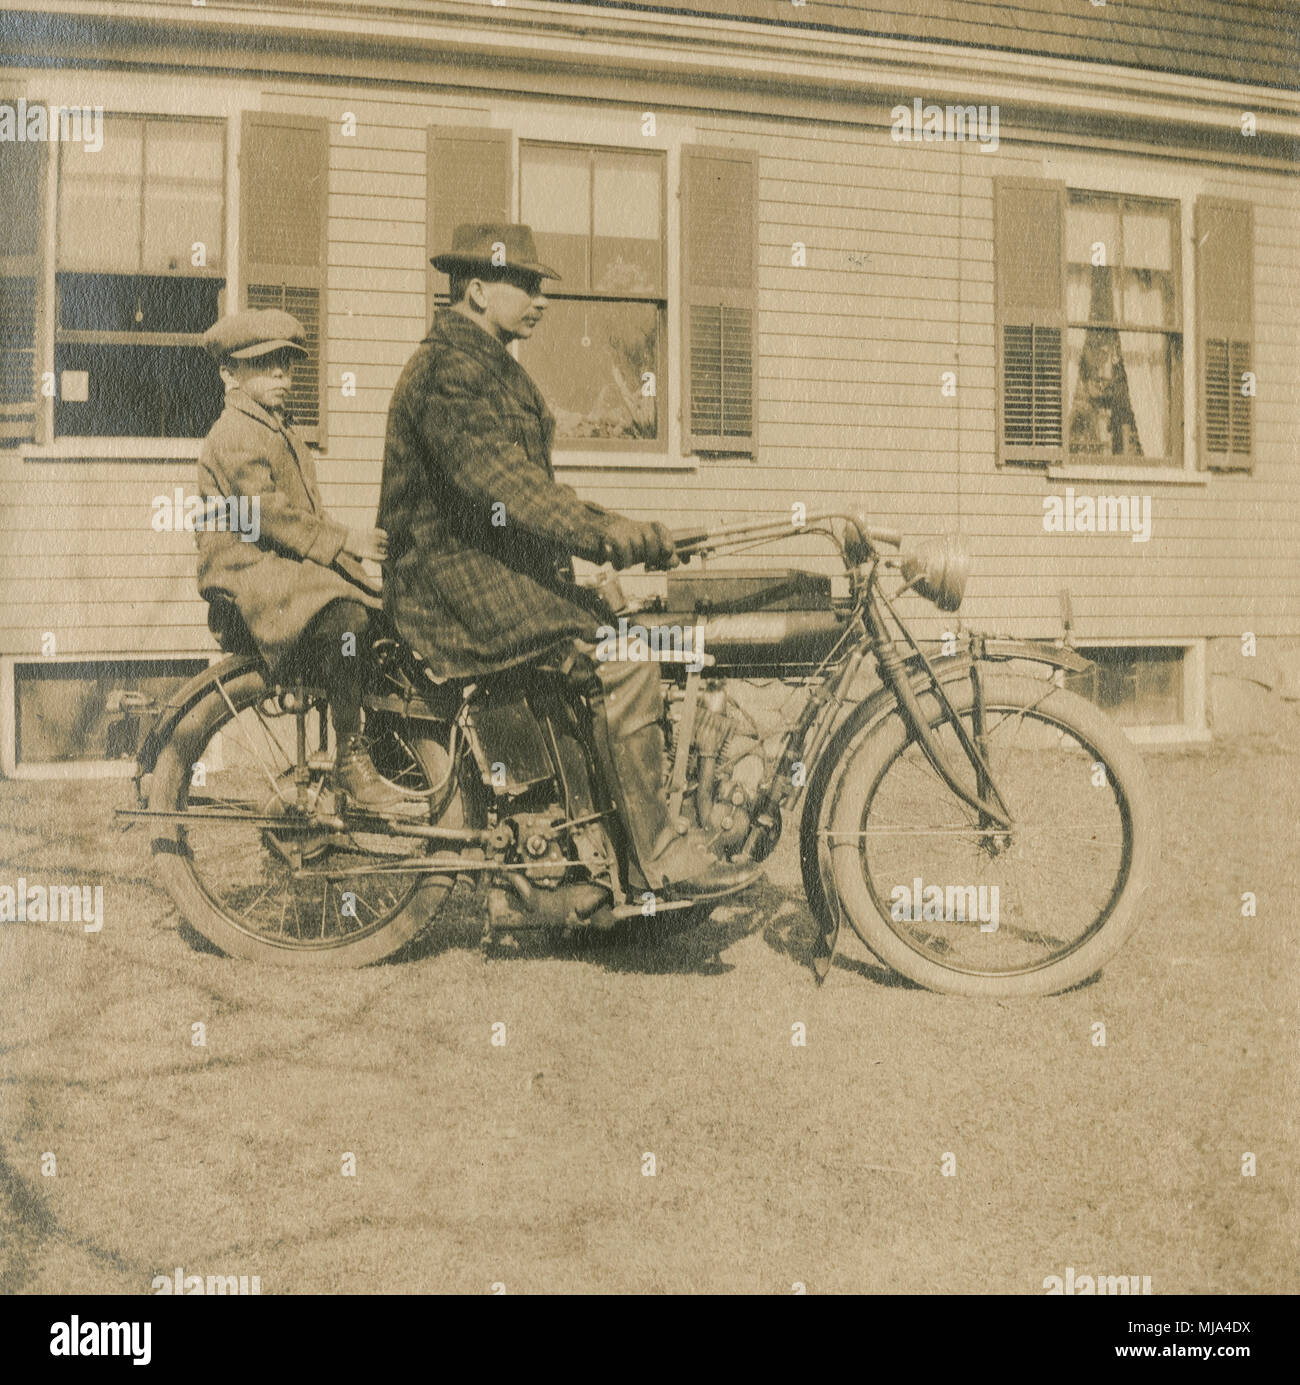 Antique c1908 fotografia, ragazzo e padre con moto Indian. Posizione sconosciuta, probabilmente la Nuova Inghilterra, Stati Uniti d'America. Fonte: originale stampa fotografica. Foto Stock